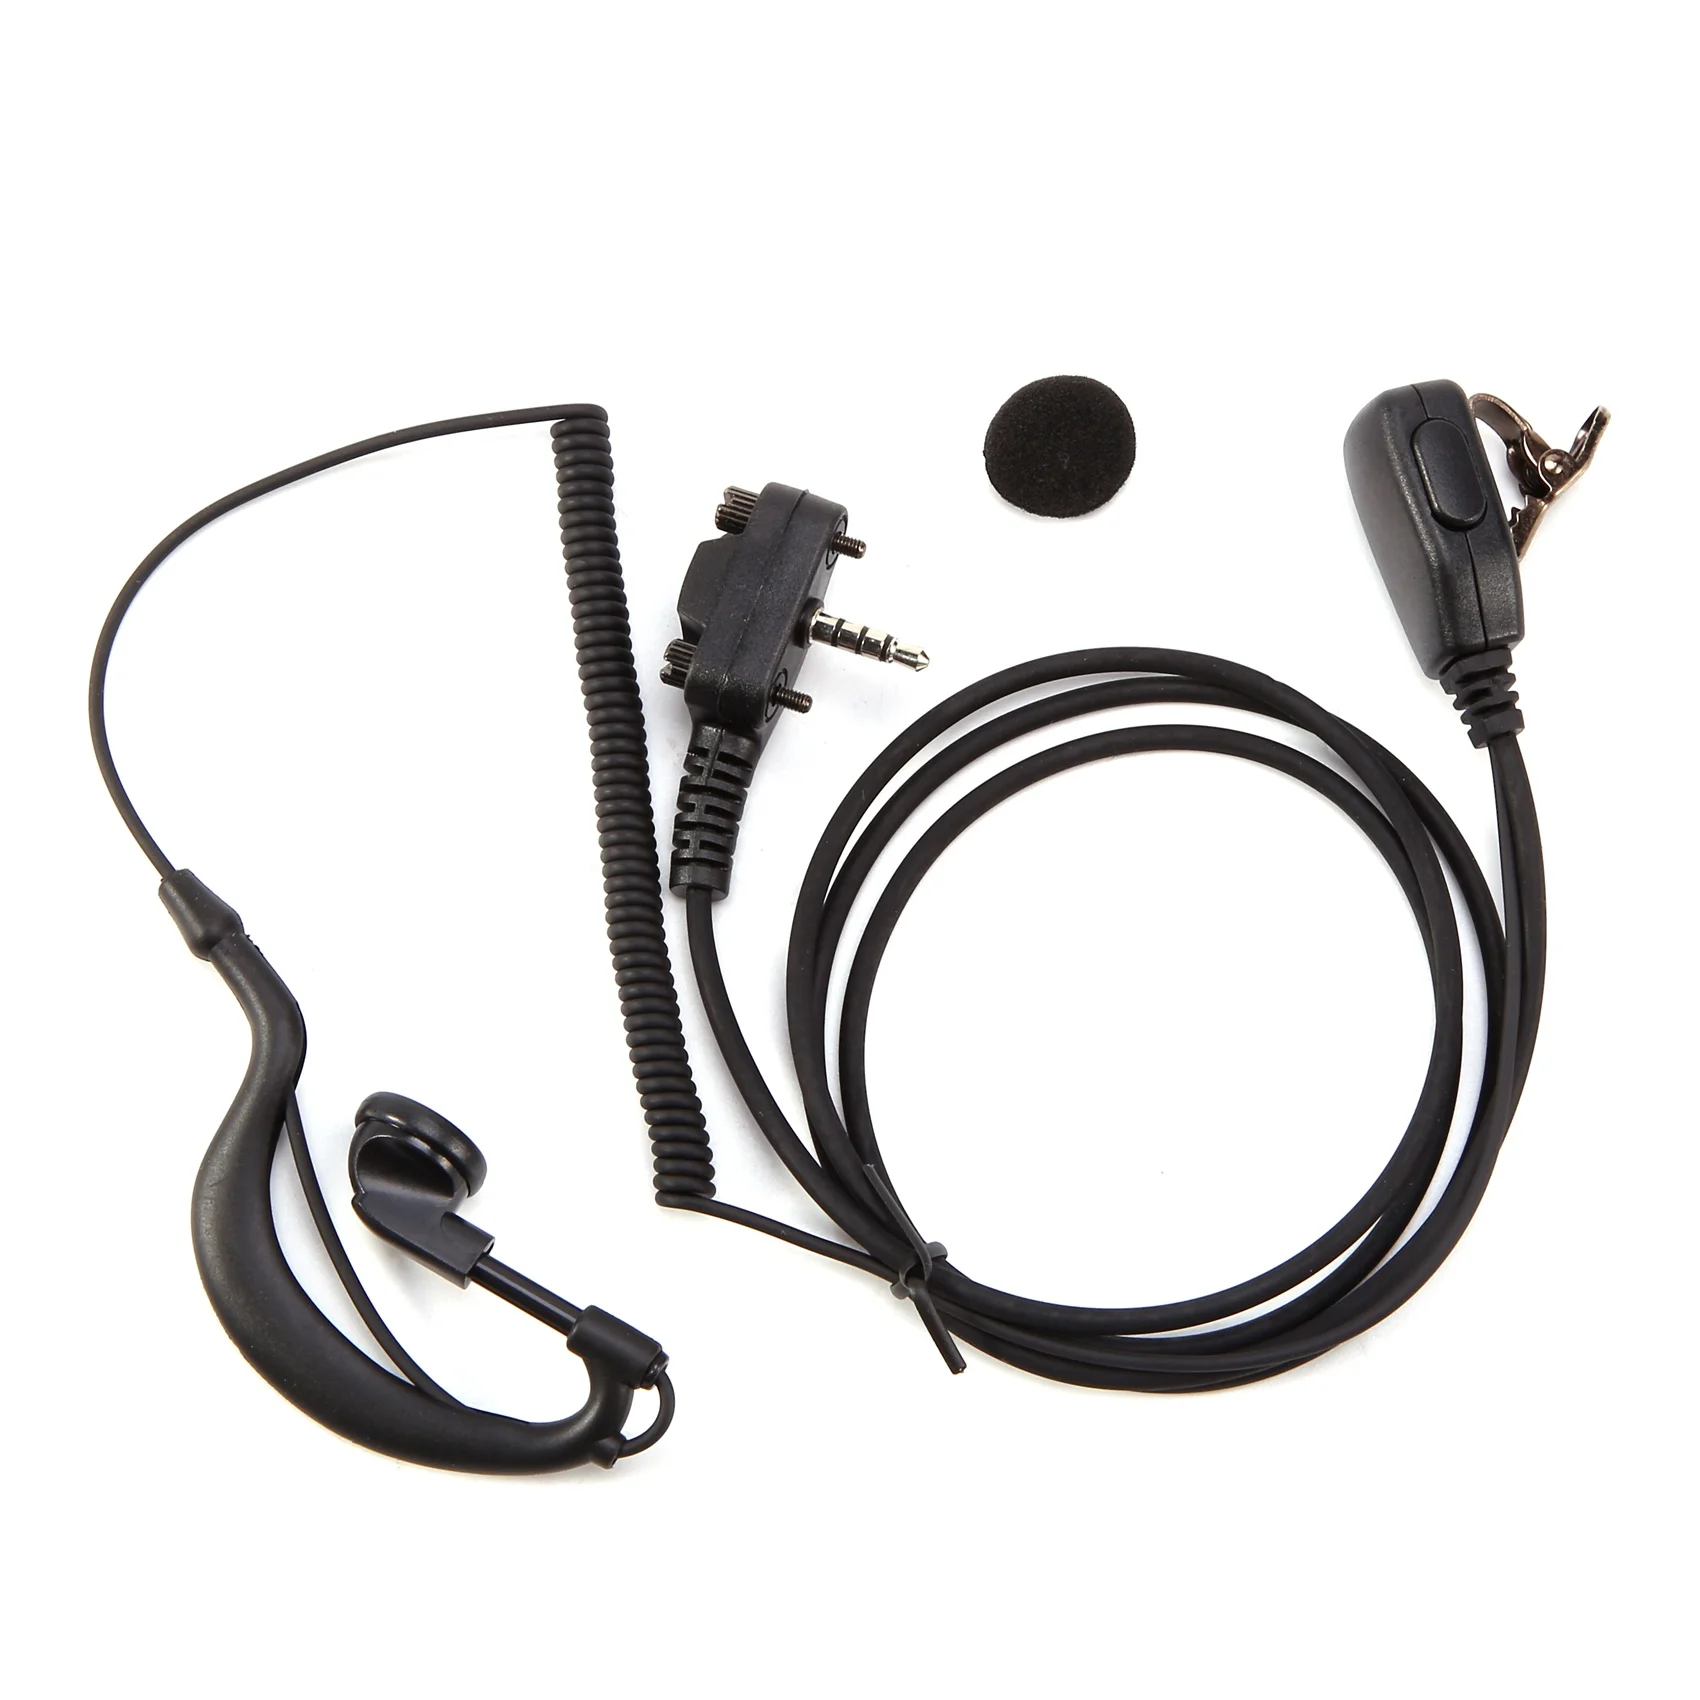 

For VX-131 VX-132 VX-150 VX-160 Headphones Earpiece Headset with PTT